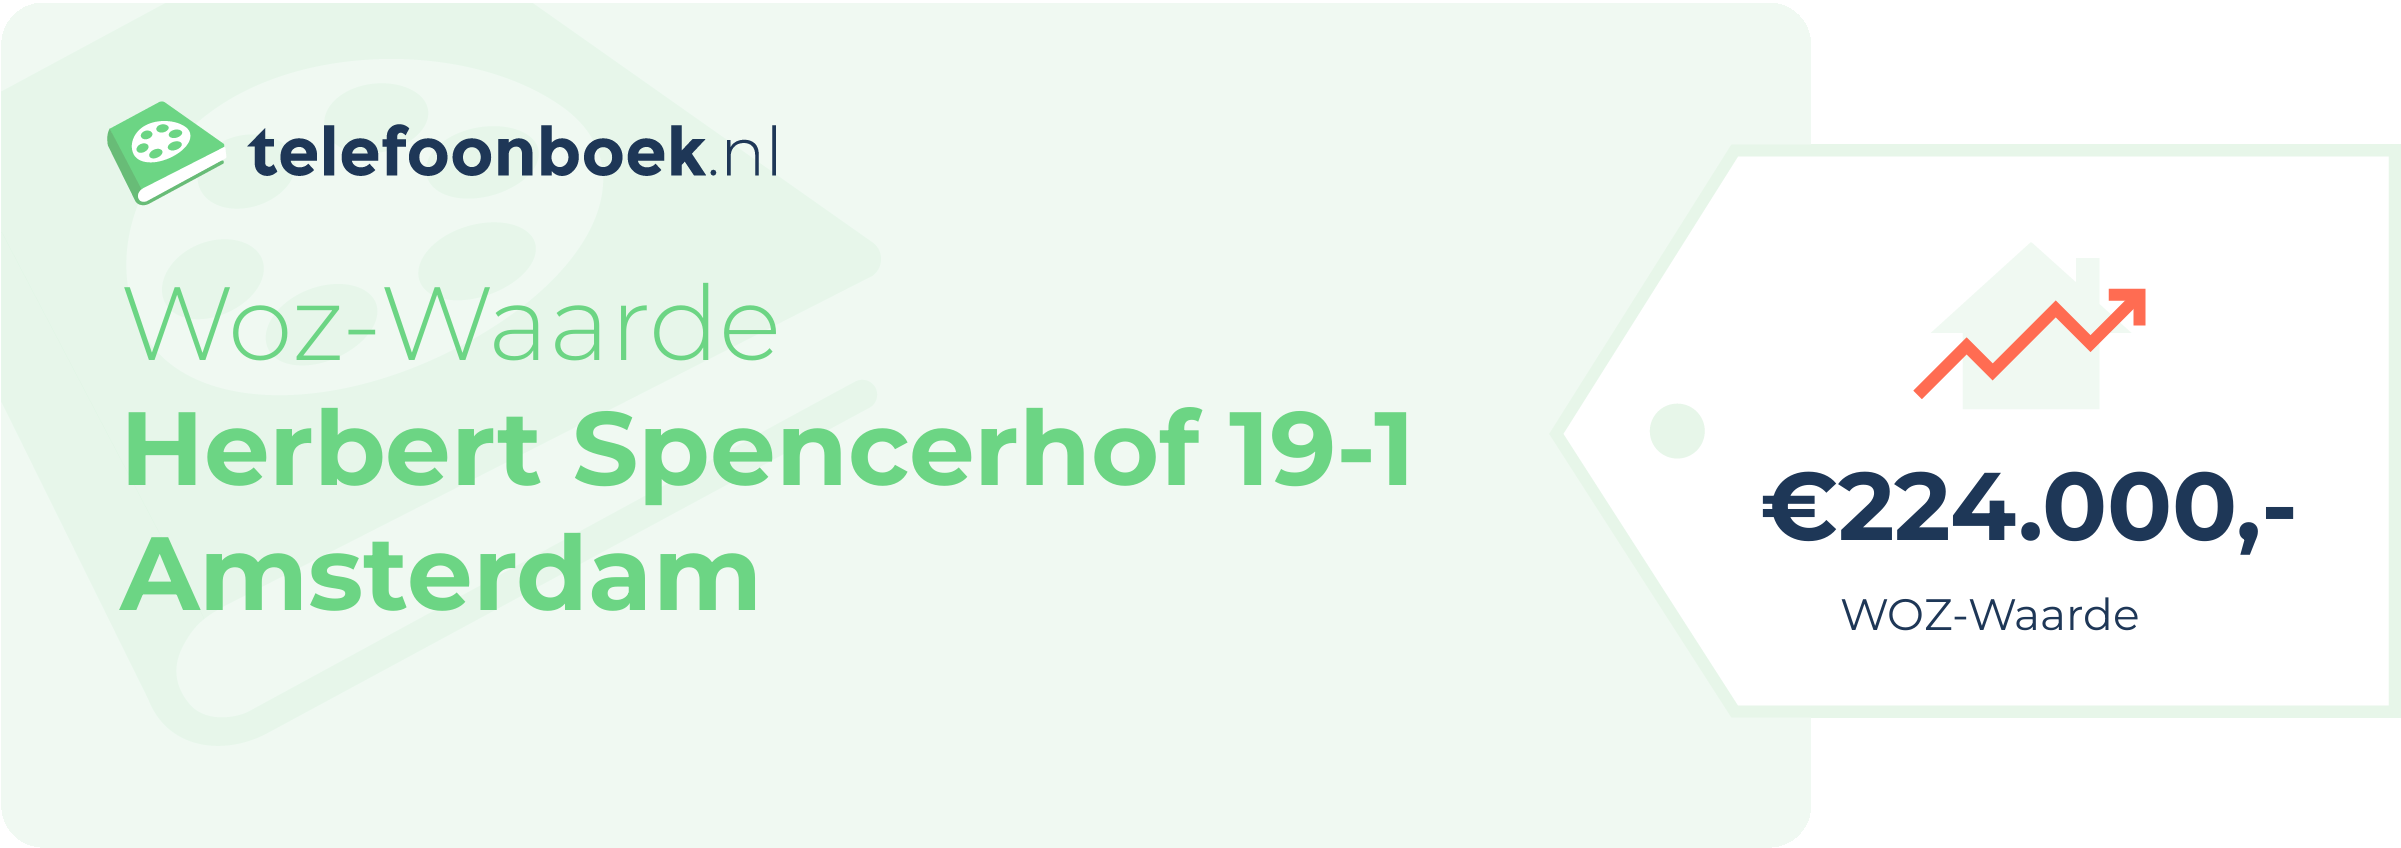 WOZ-waarde Herbert Spencerhof 19-1 Amsterdam